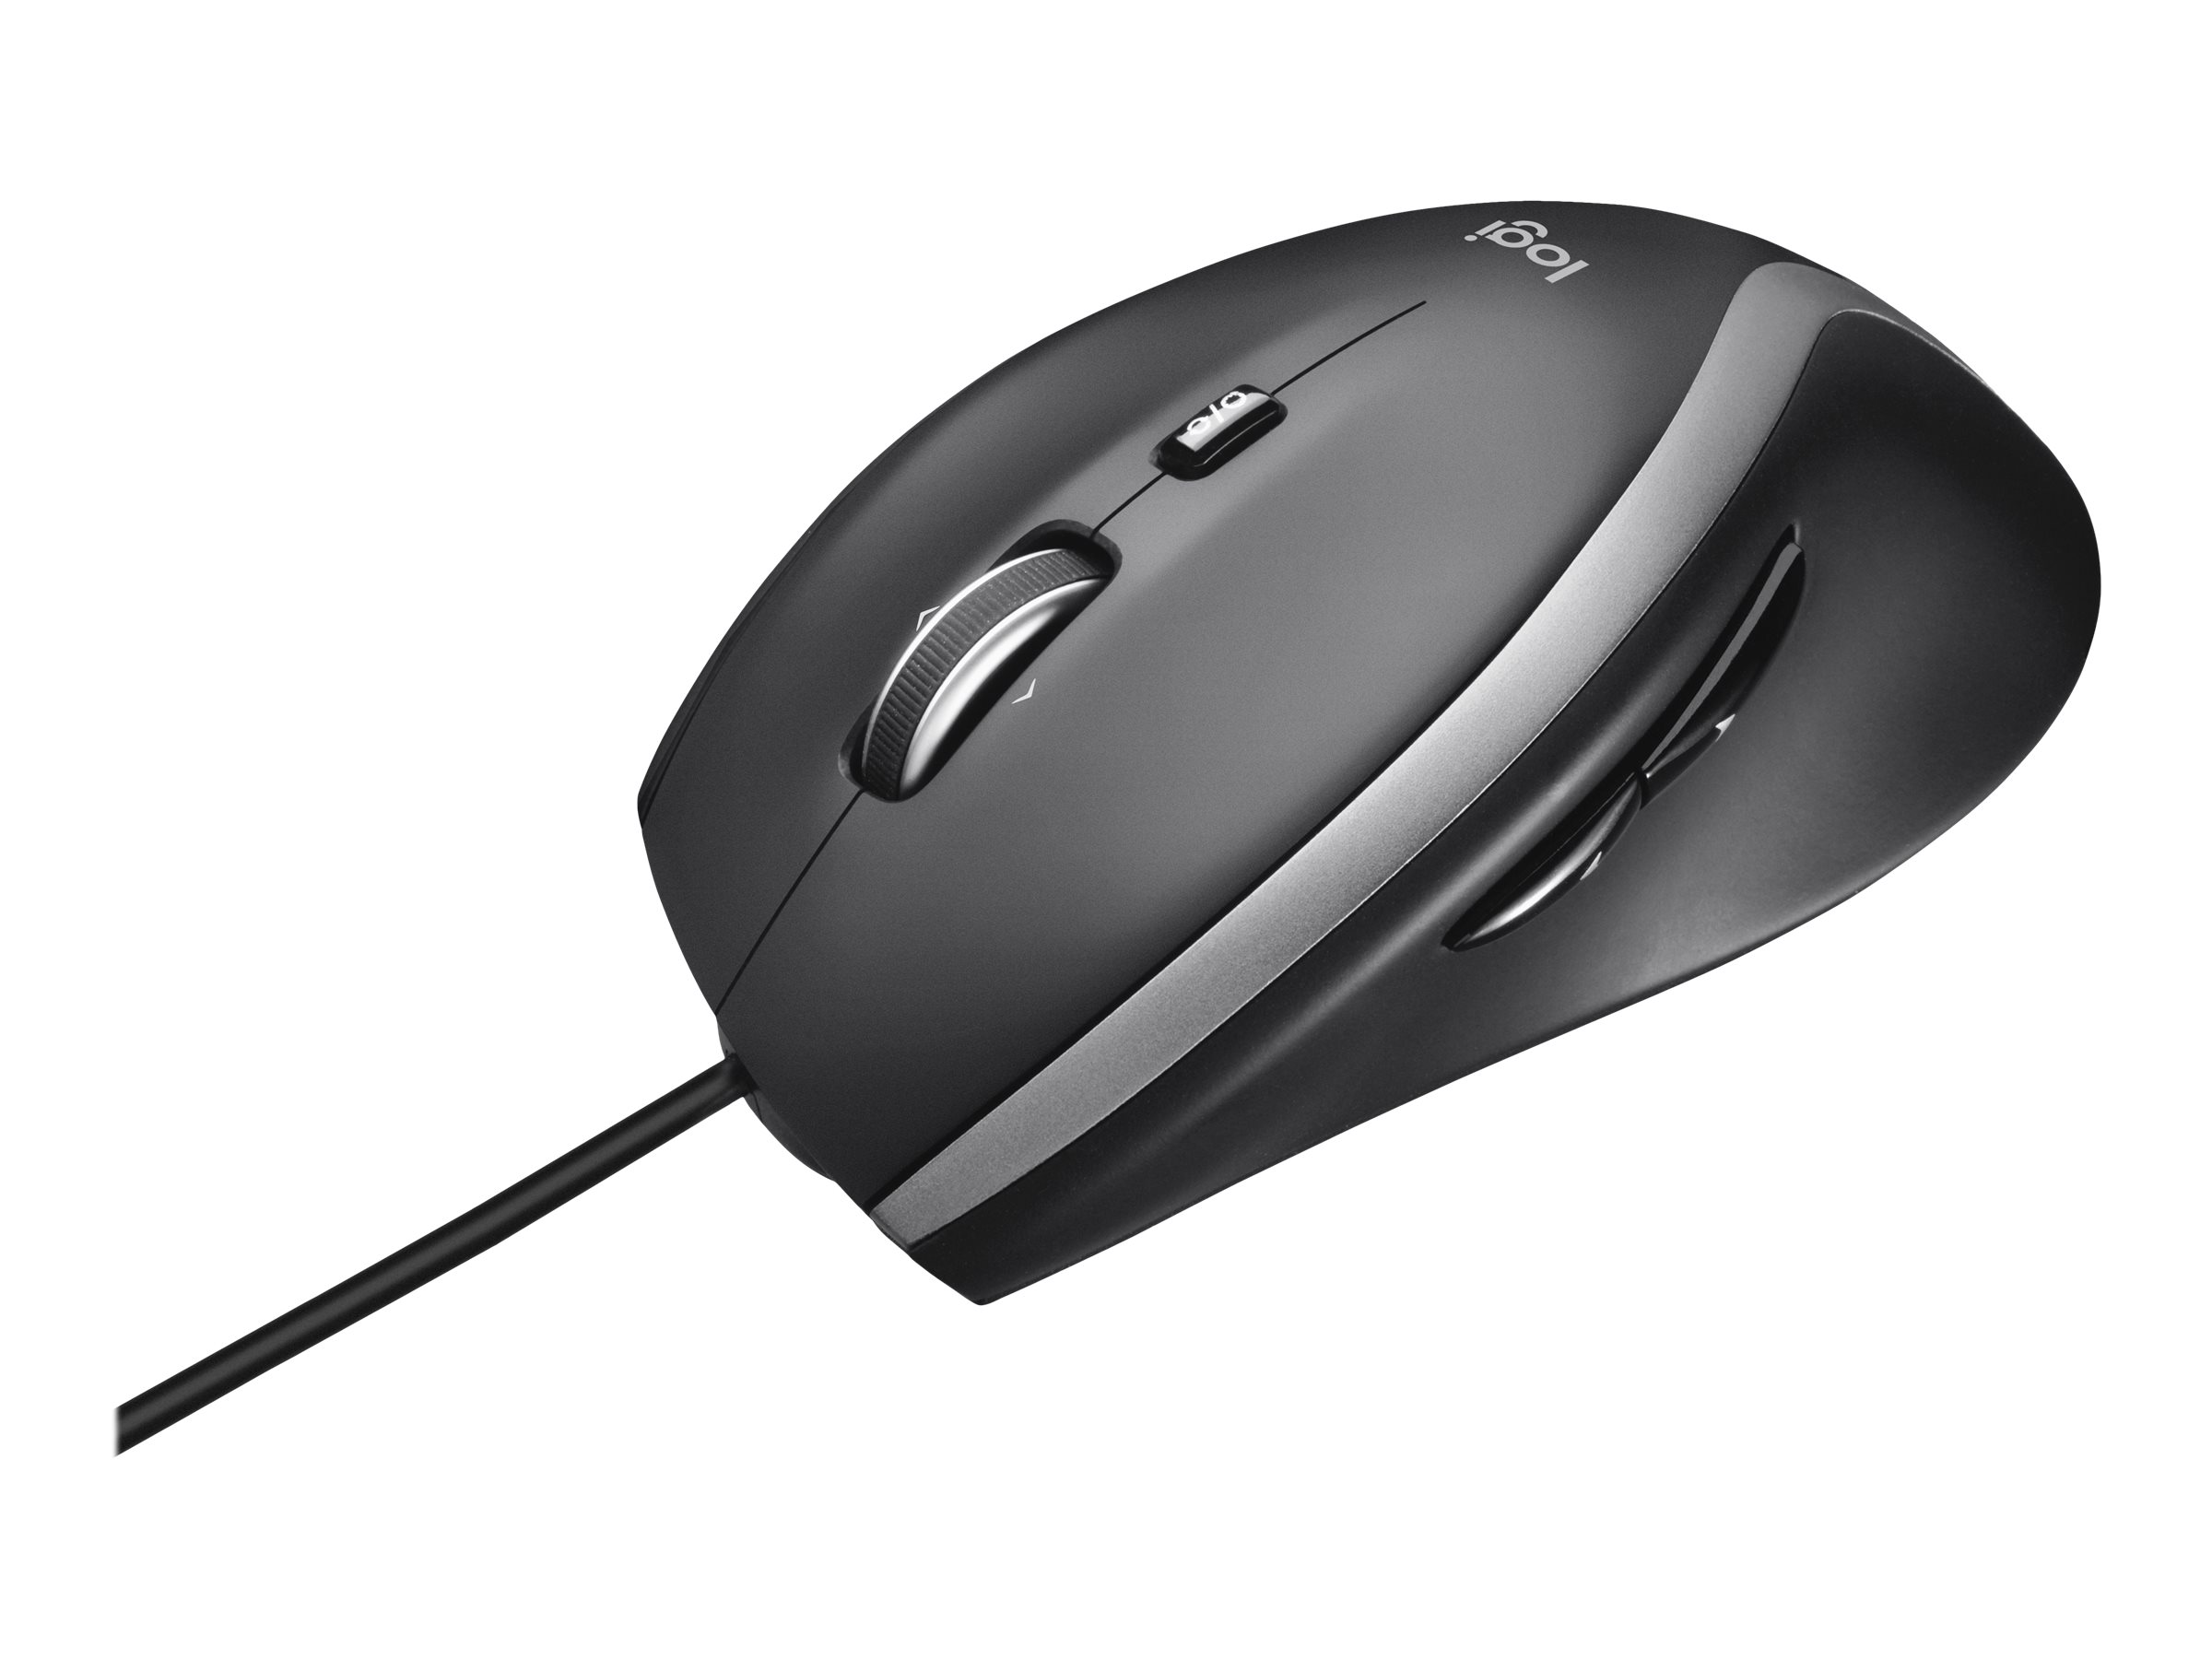 Logitech USB Mouse M500s black retail